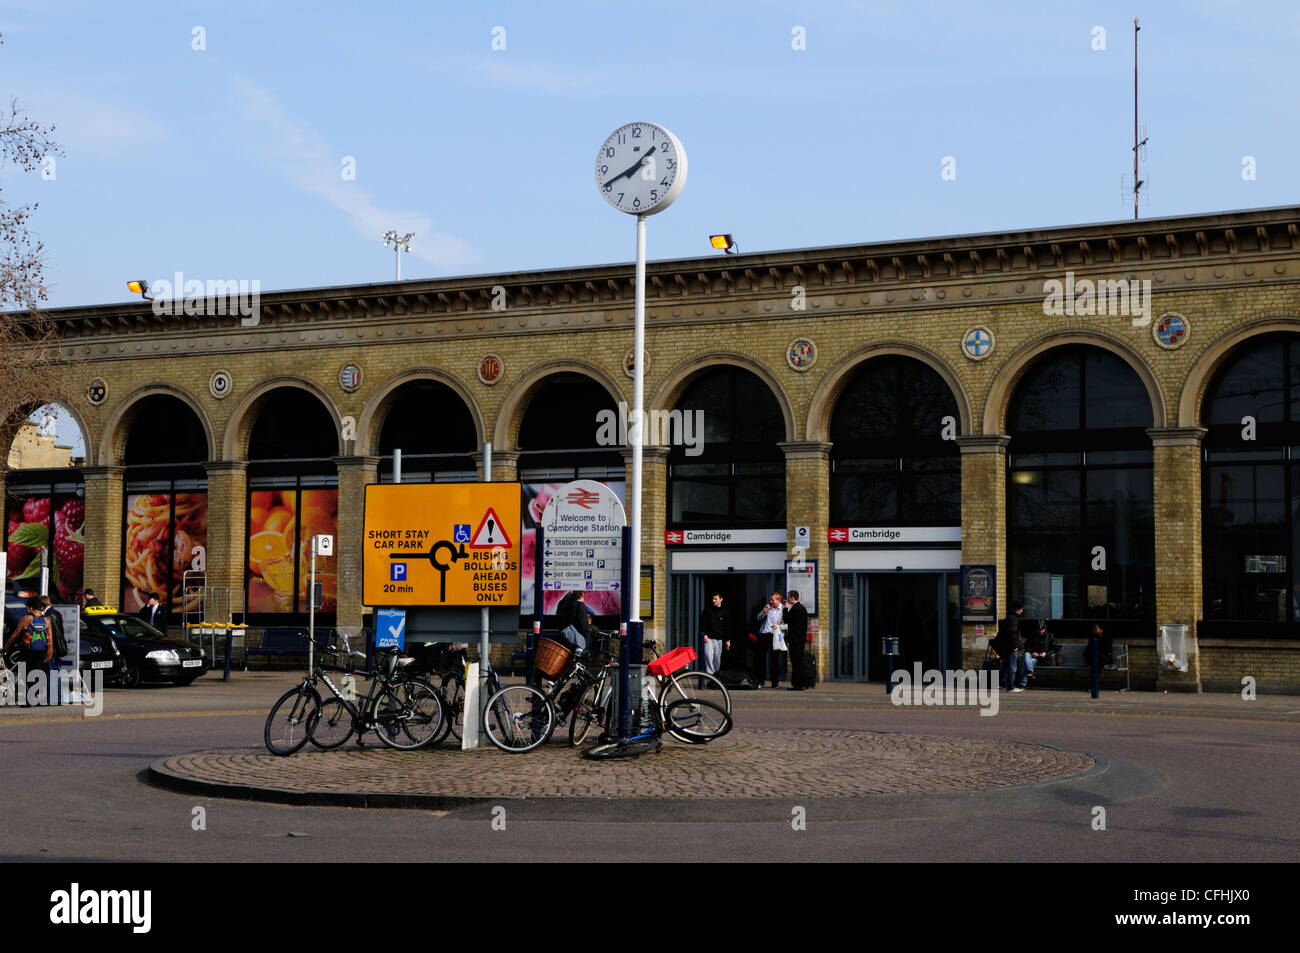 Entrada a la estación de trenes de Cambridge, Cambridge, Inglaterra, Reino Unido. Foto de stock